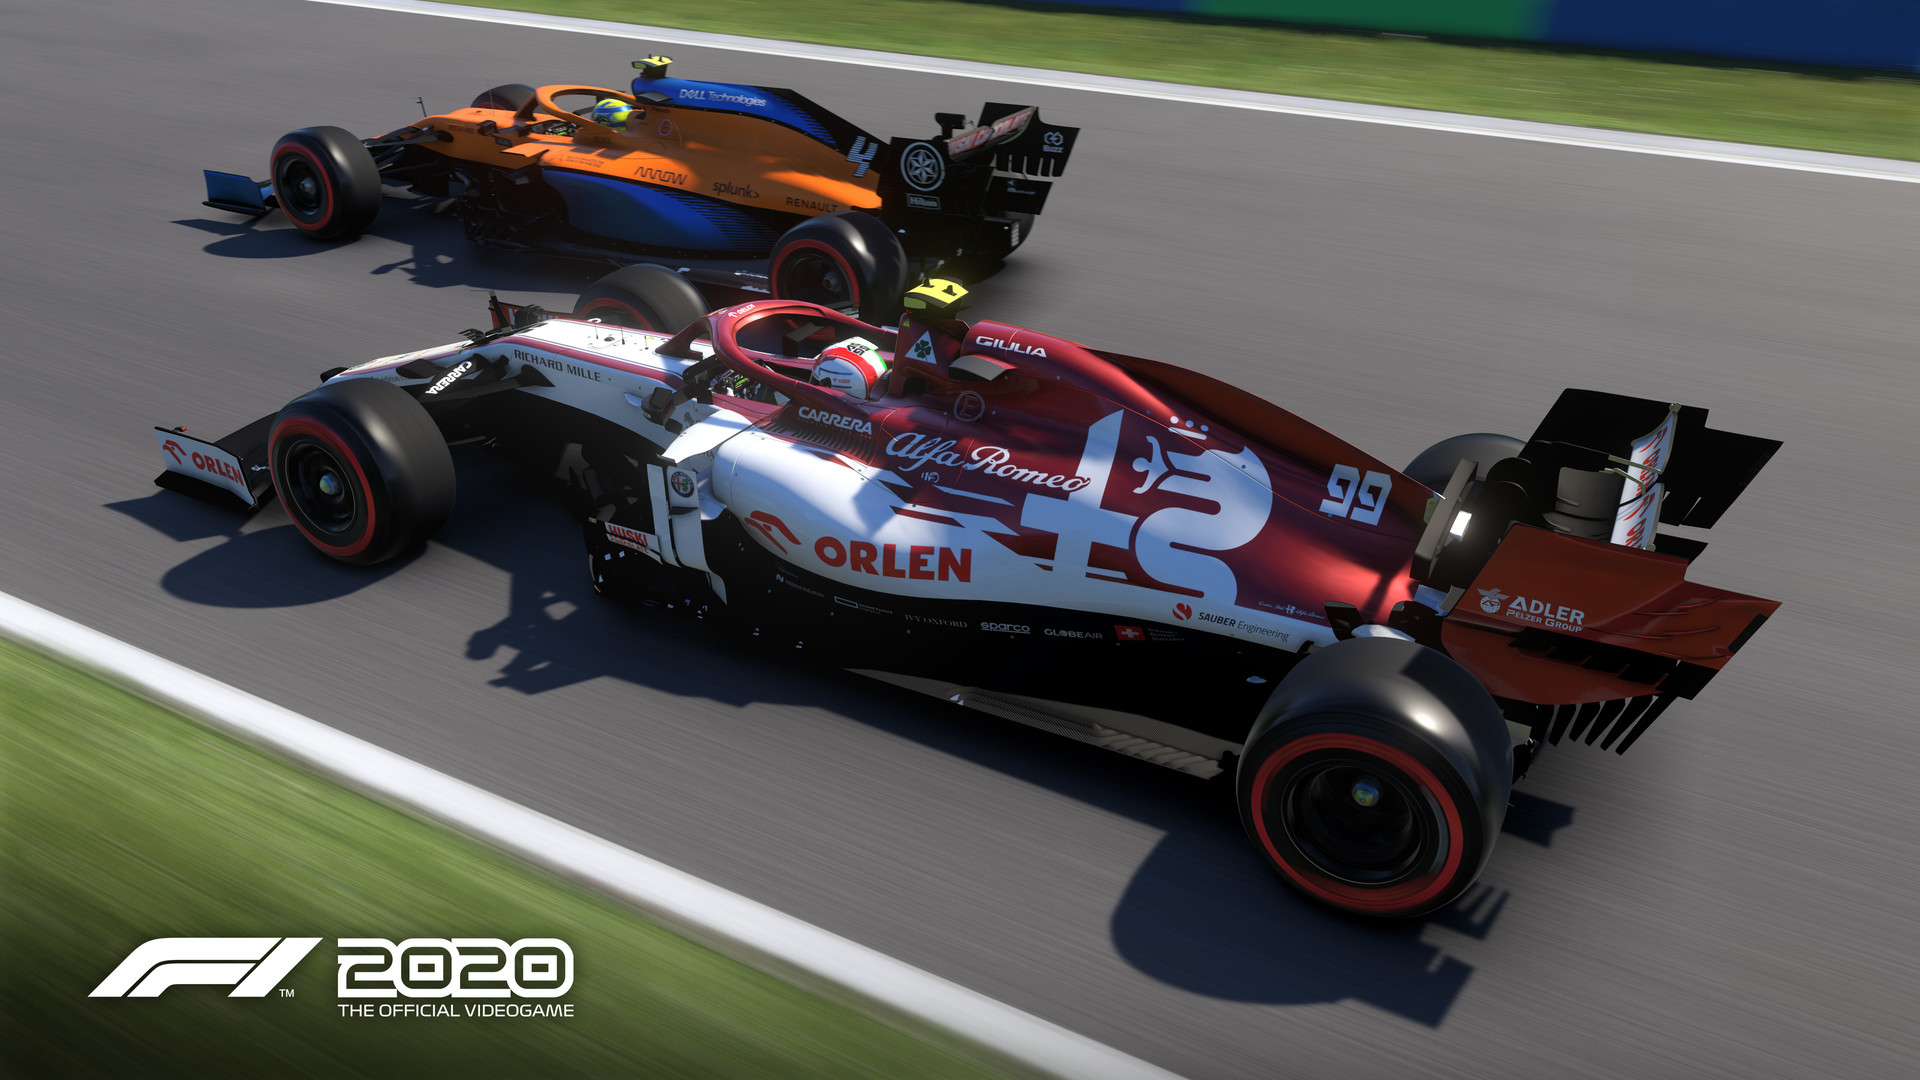 F1® 2020 on Steam